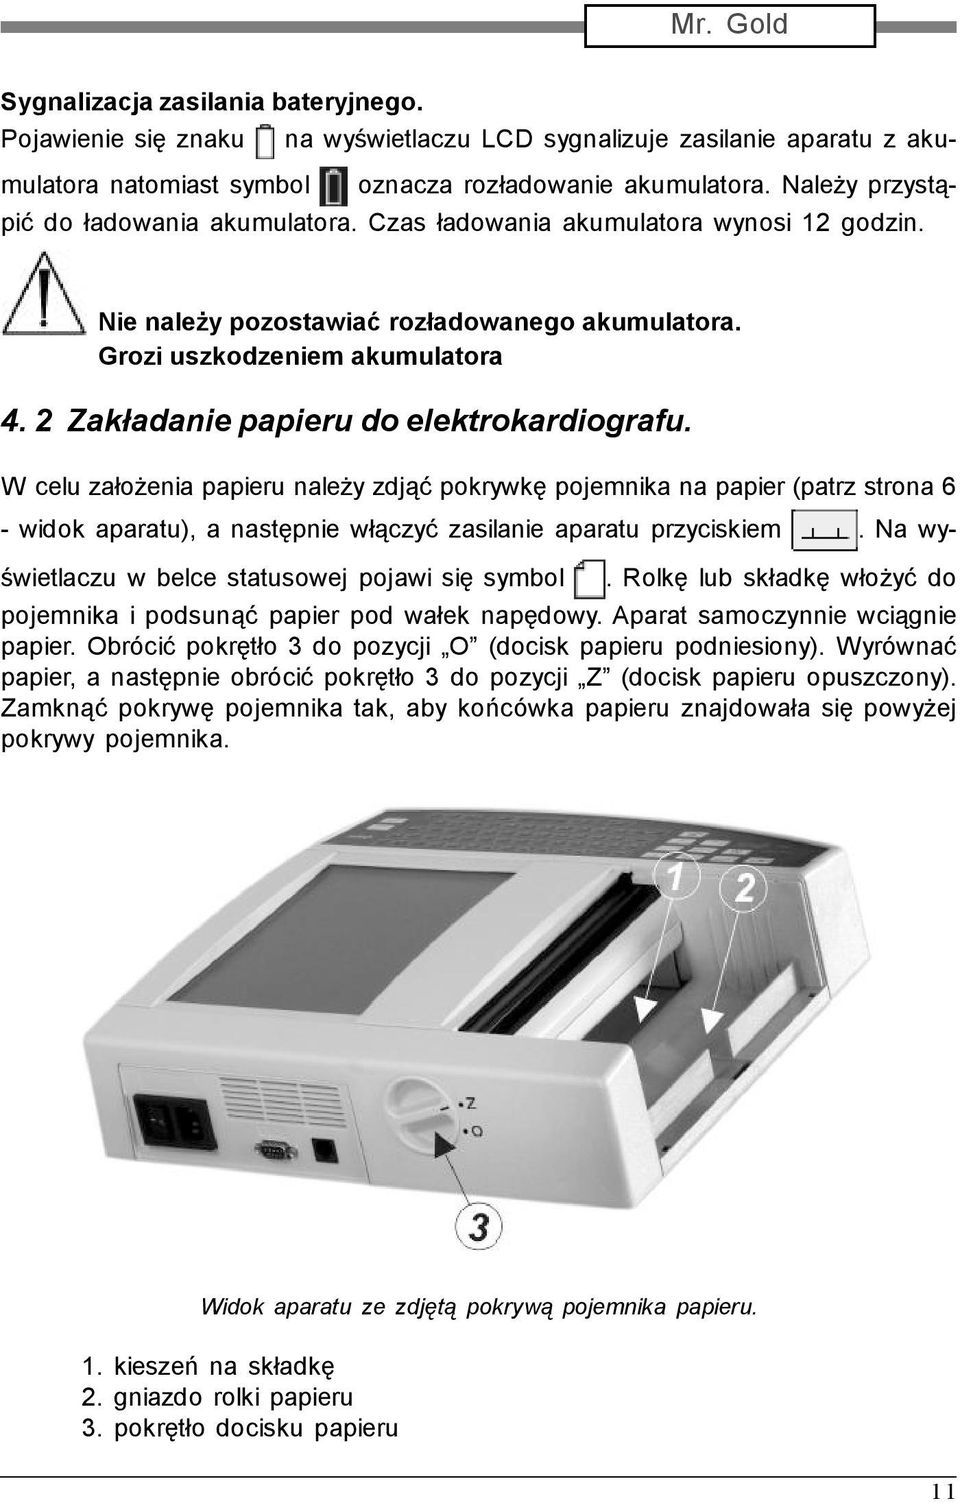 2 Zakładanie papieru do elektrokardiografu. W celu założenia papieru należy zdjąć pokrywkę pojemnika na papier (patrz strona 6 - widok aparatu), a następnie włączyć zasilanie aparatu przyciskiem.